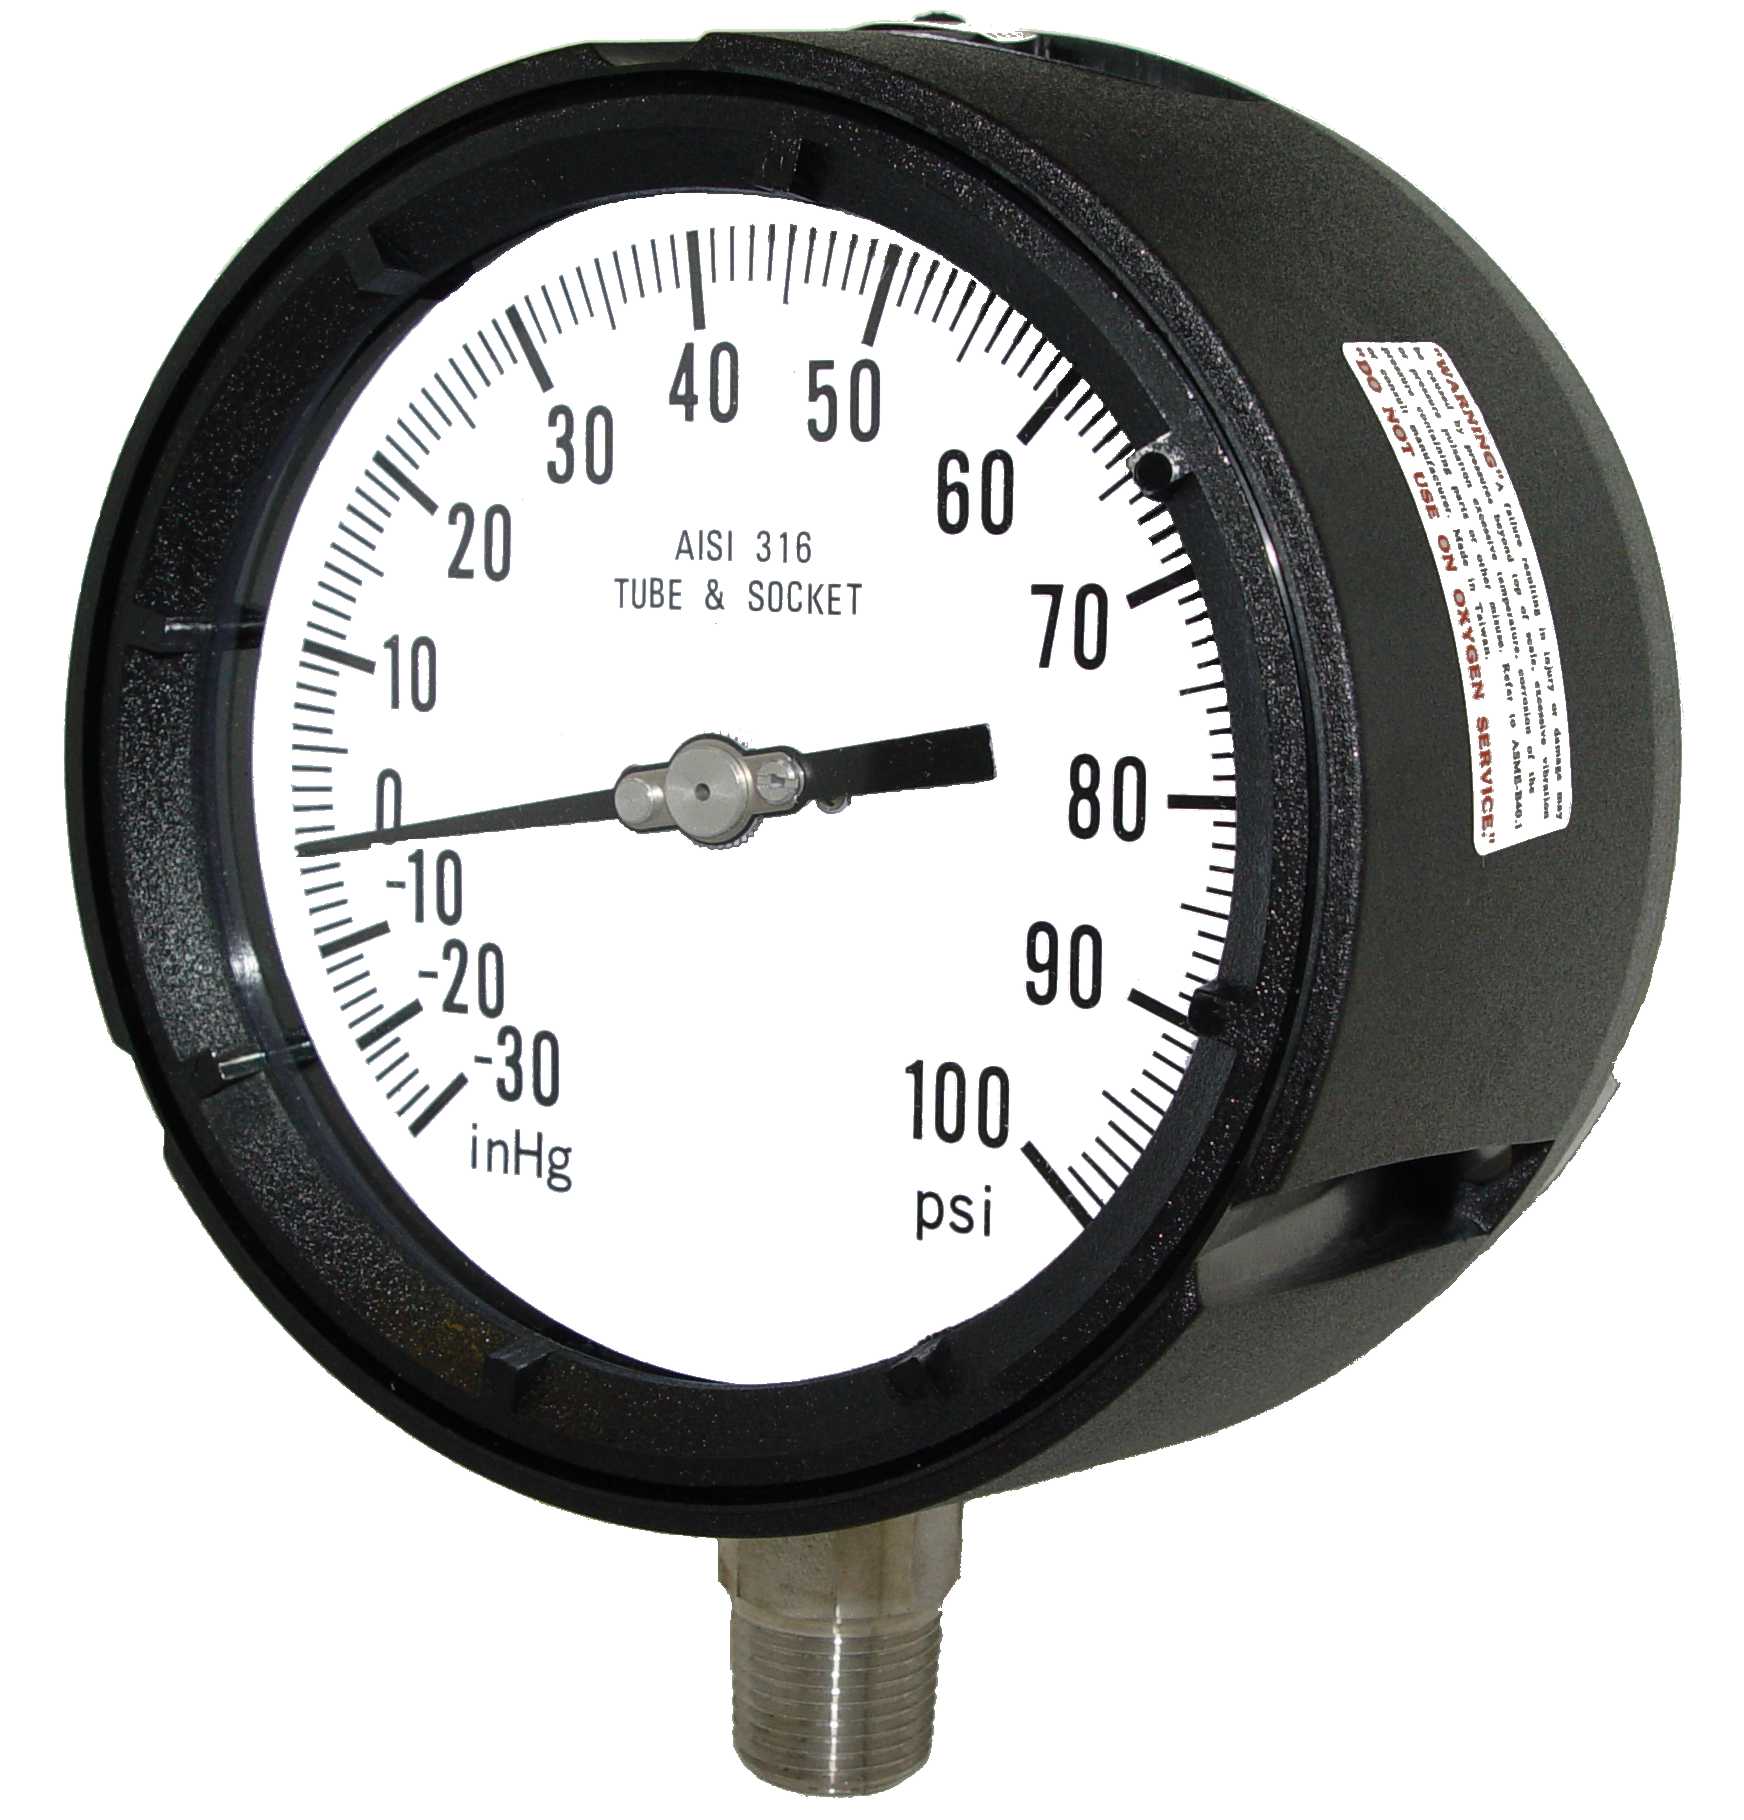 Model 4501-452L gauge, 4.5 dial, 1/2 mount, 0-800 PSI